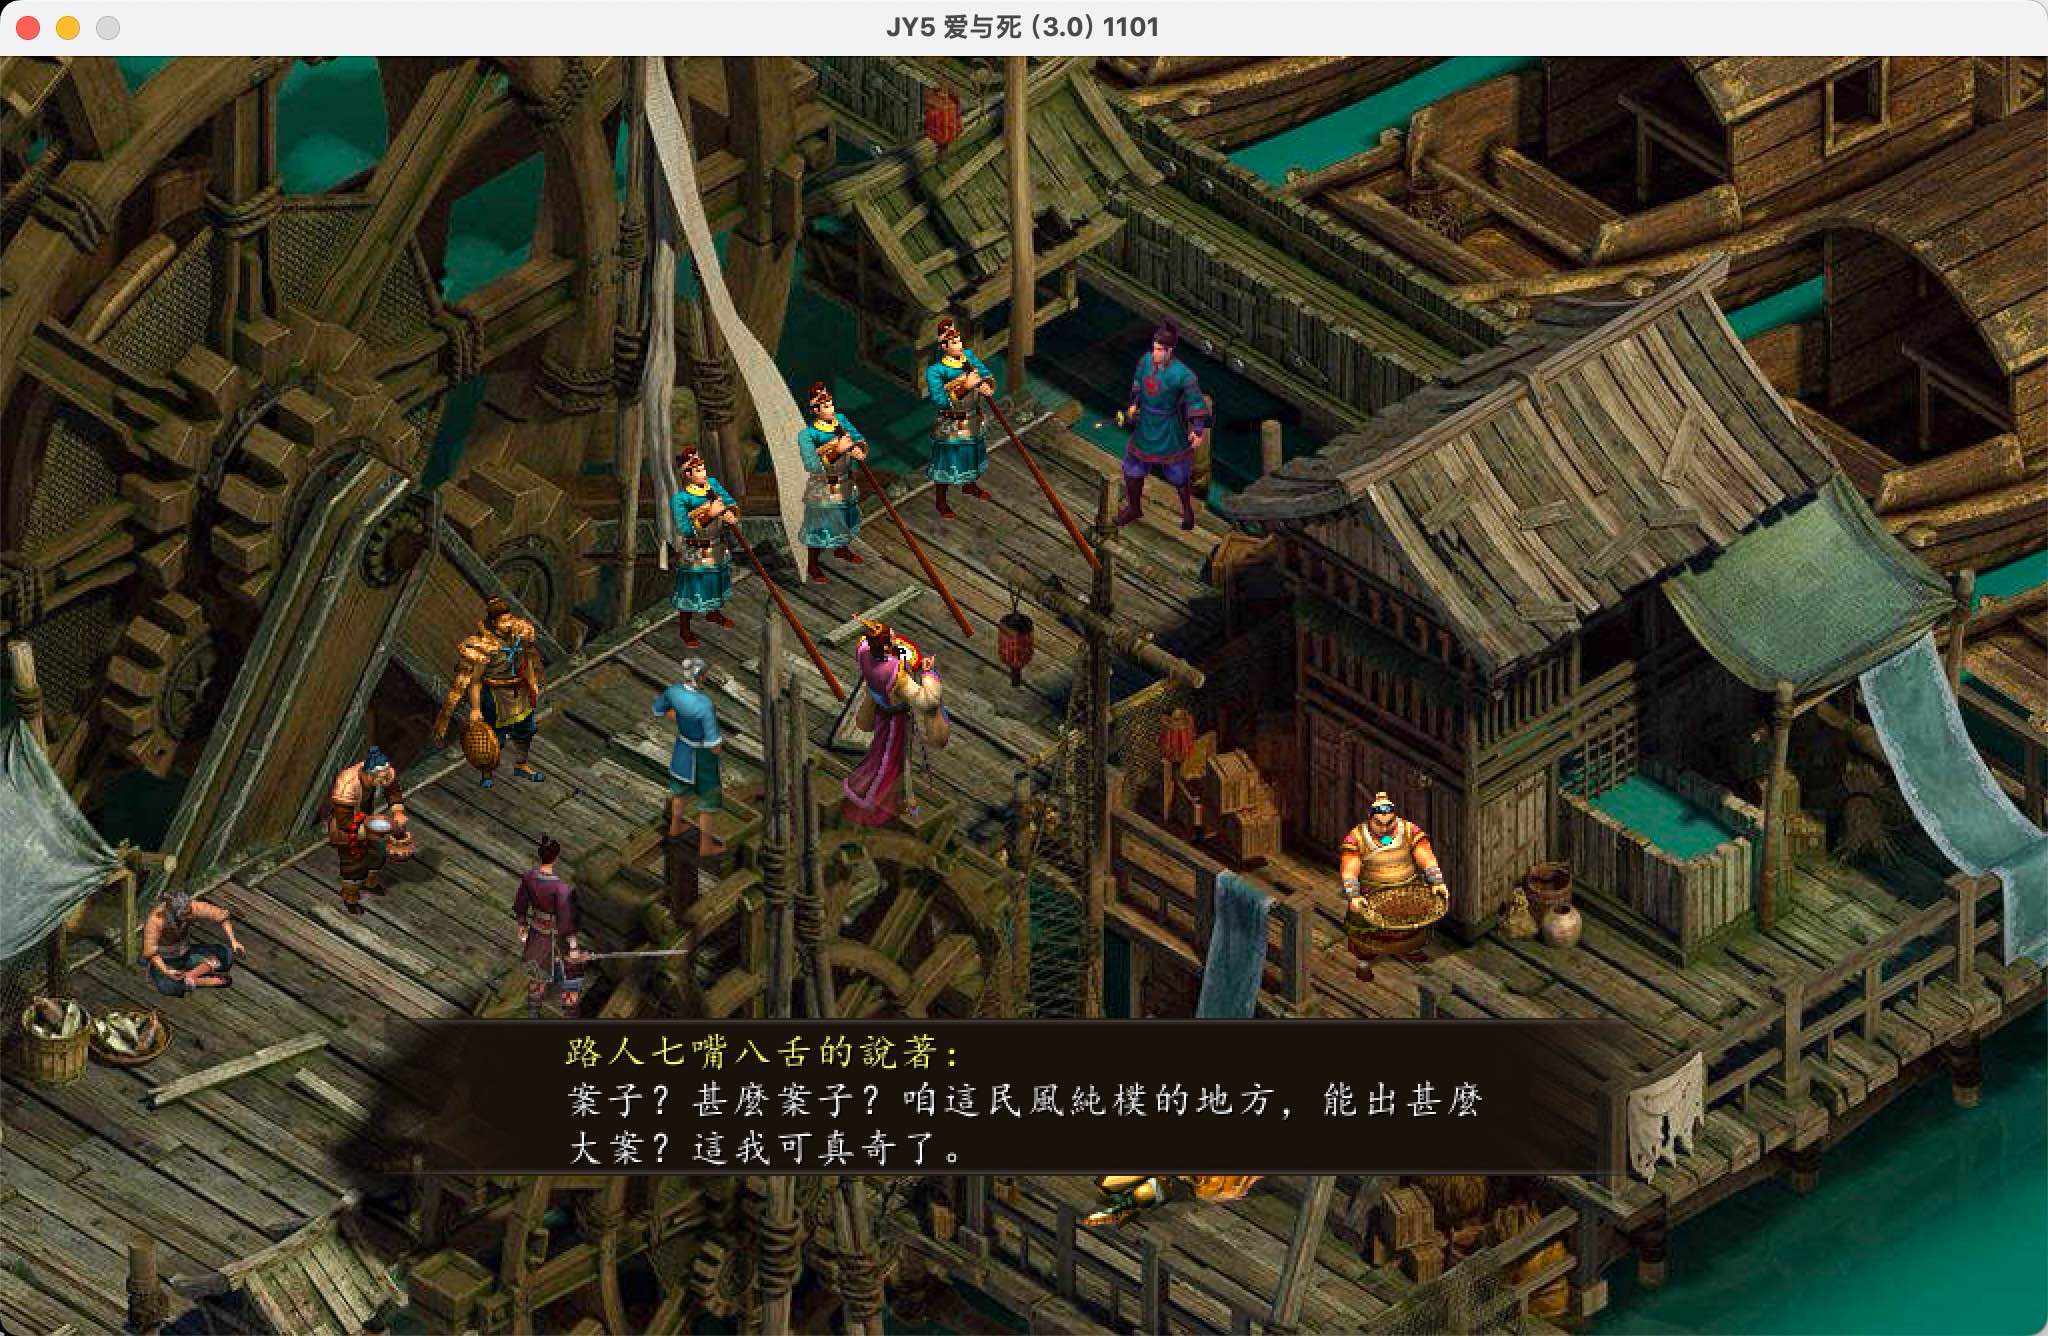 金庸群侠传5 for Mac Heroes of Jin Yong 5 v3.1.0 中文移植版 整合爱与死MOD 苹果电脑